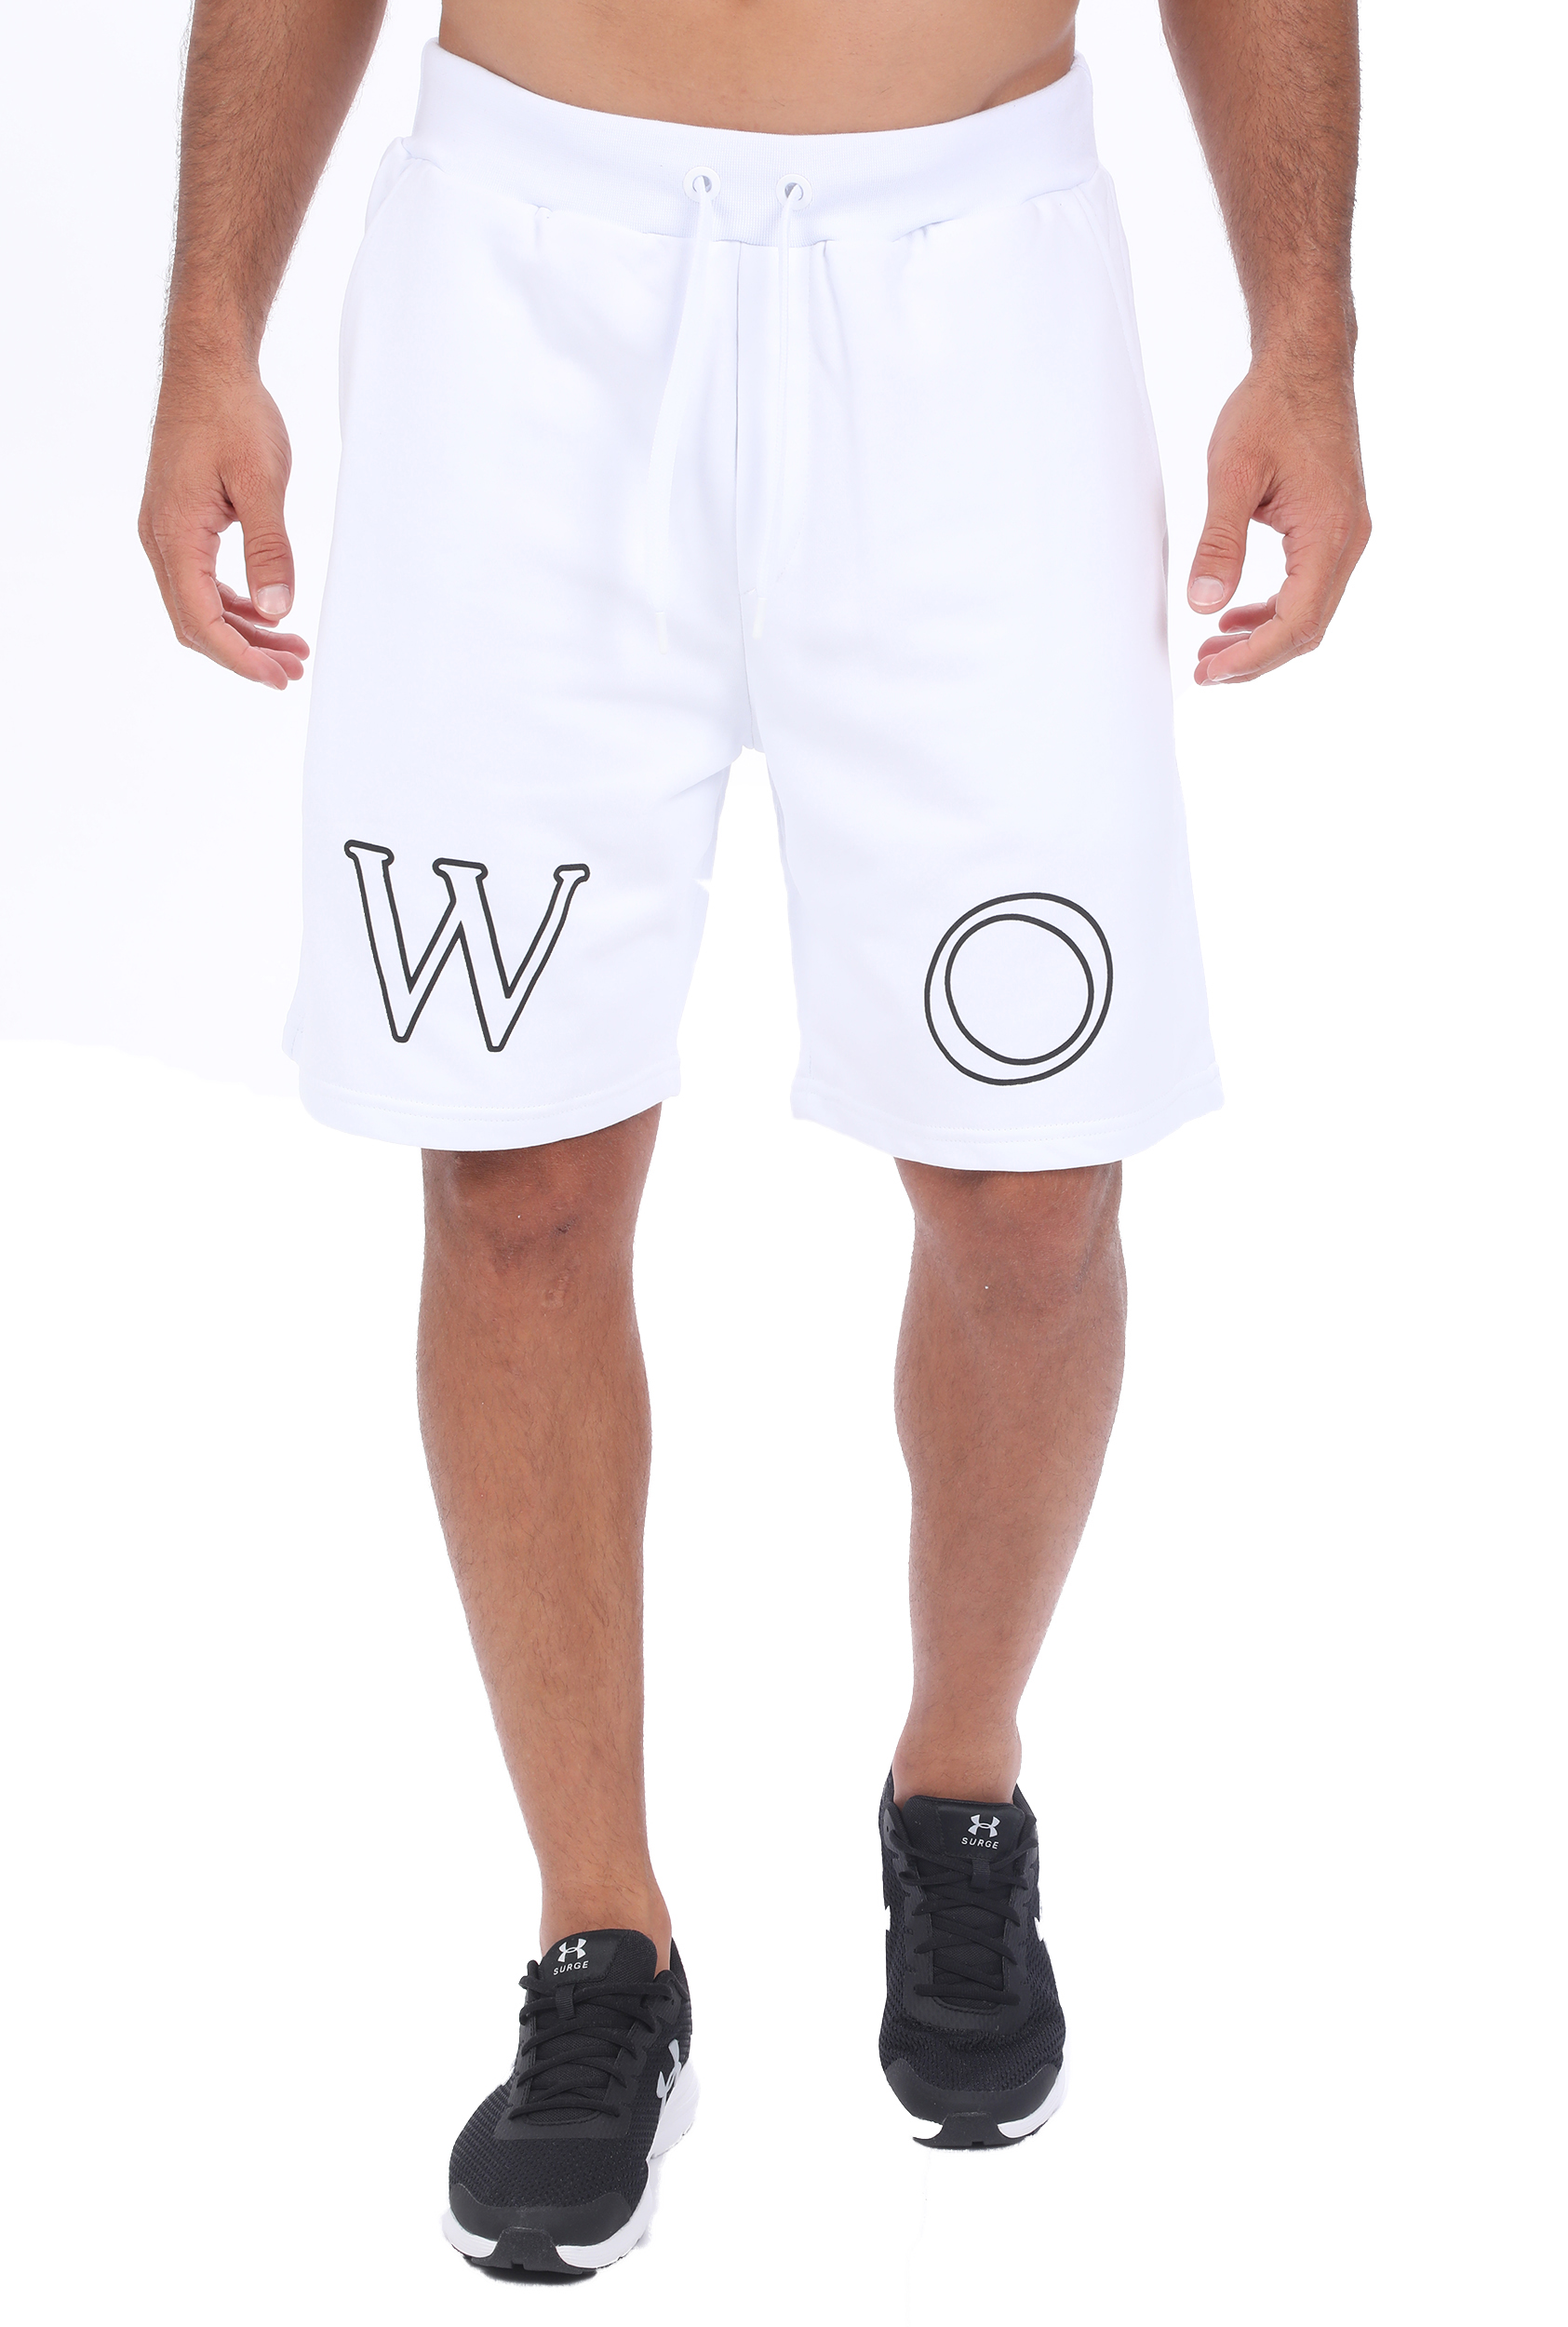 Ανδρικά/Ρούχα/Σορτς-Βερμούδες/Αθλητικά WOLM - Ανδρική βερμούδα WOLM λευκή